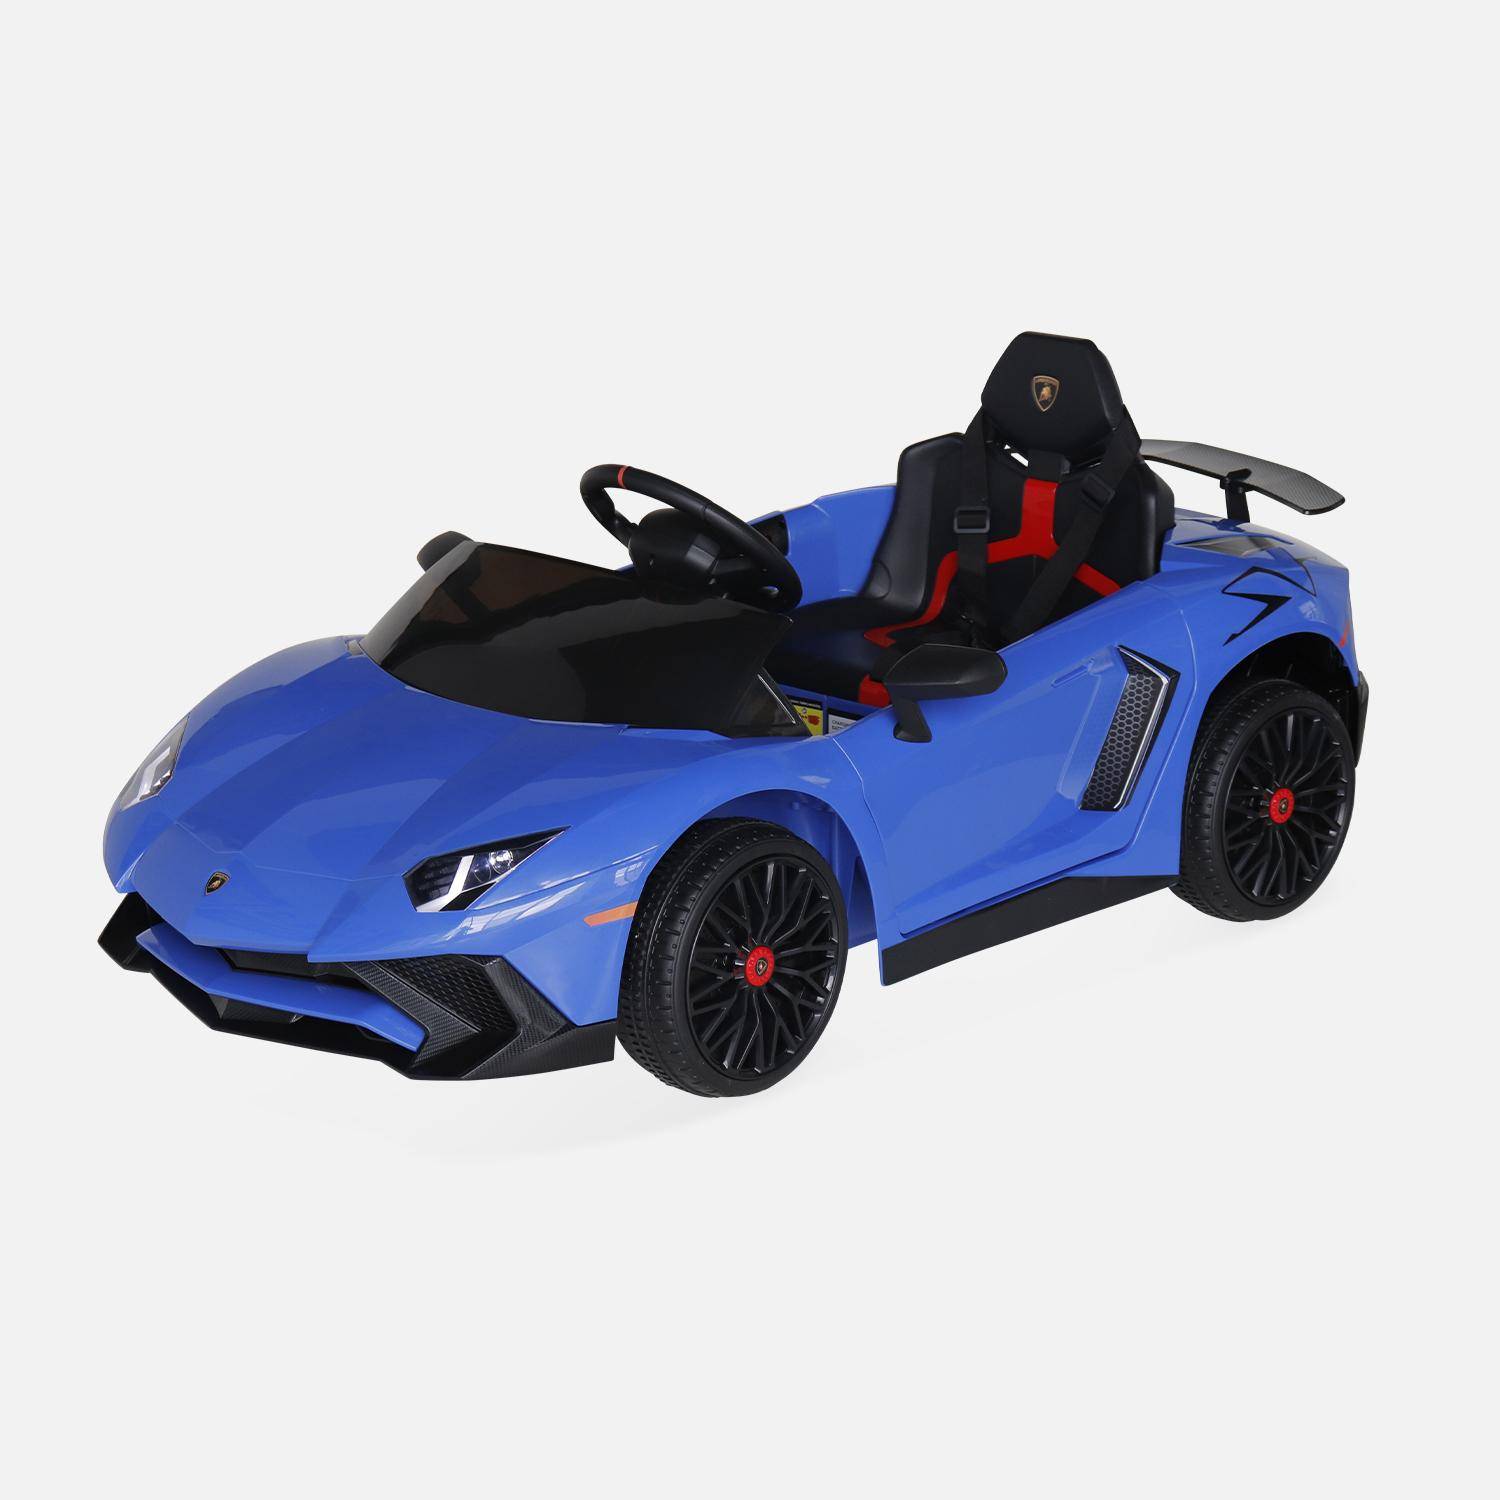 Voiture électrique 12V pour enfant Lamborghini, bleu, 1 place, avec autoradio, télécommande, MP3, port USB et phares fonctionnels Photo3